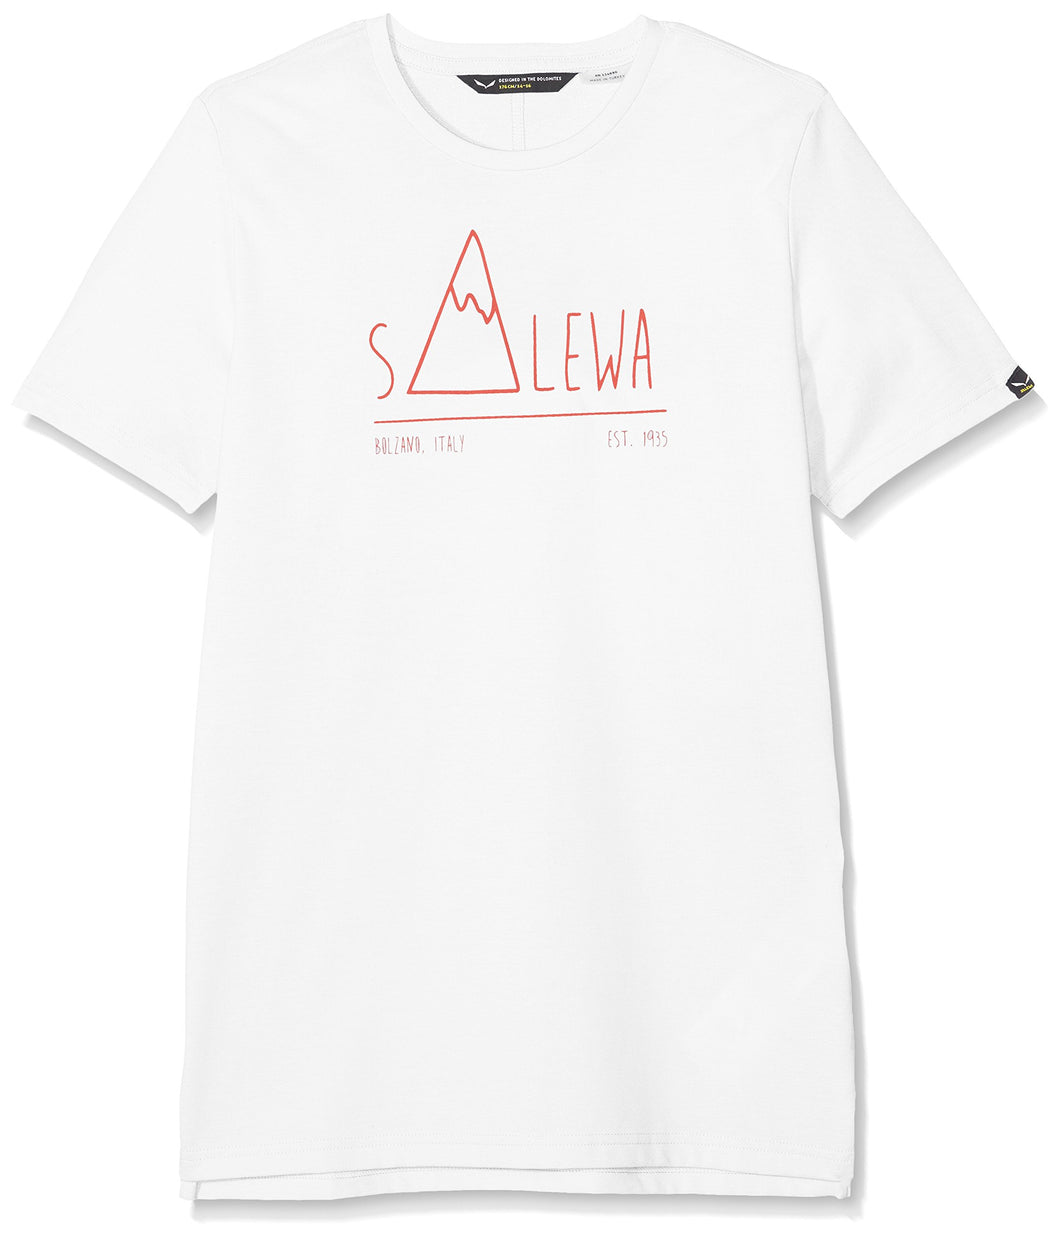 SALEWA Frea Peak Dry K, T-Shirt Bambino